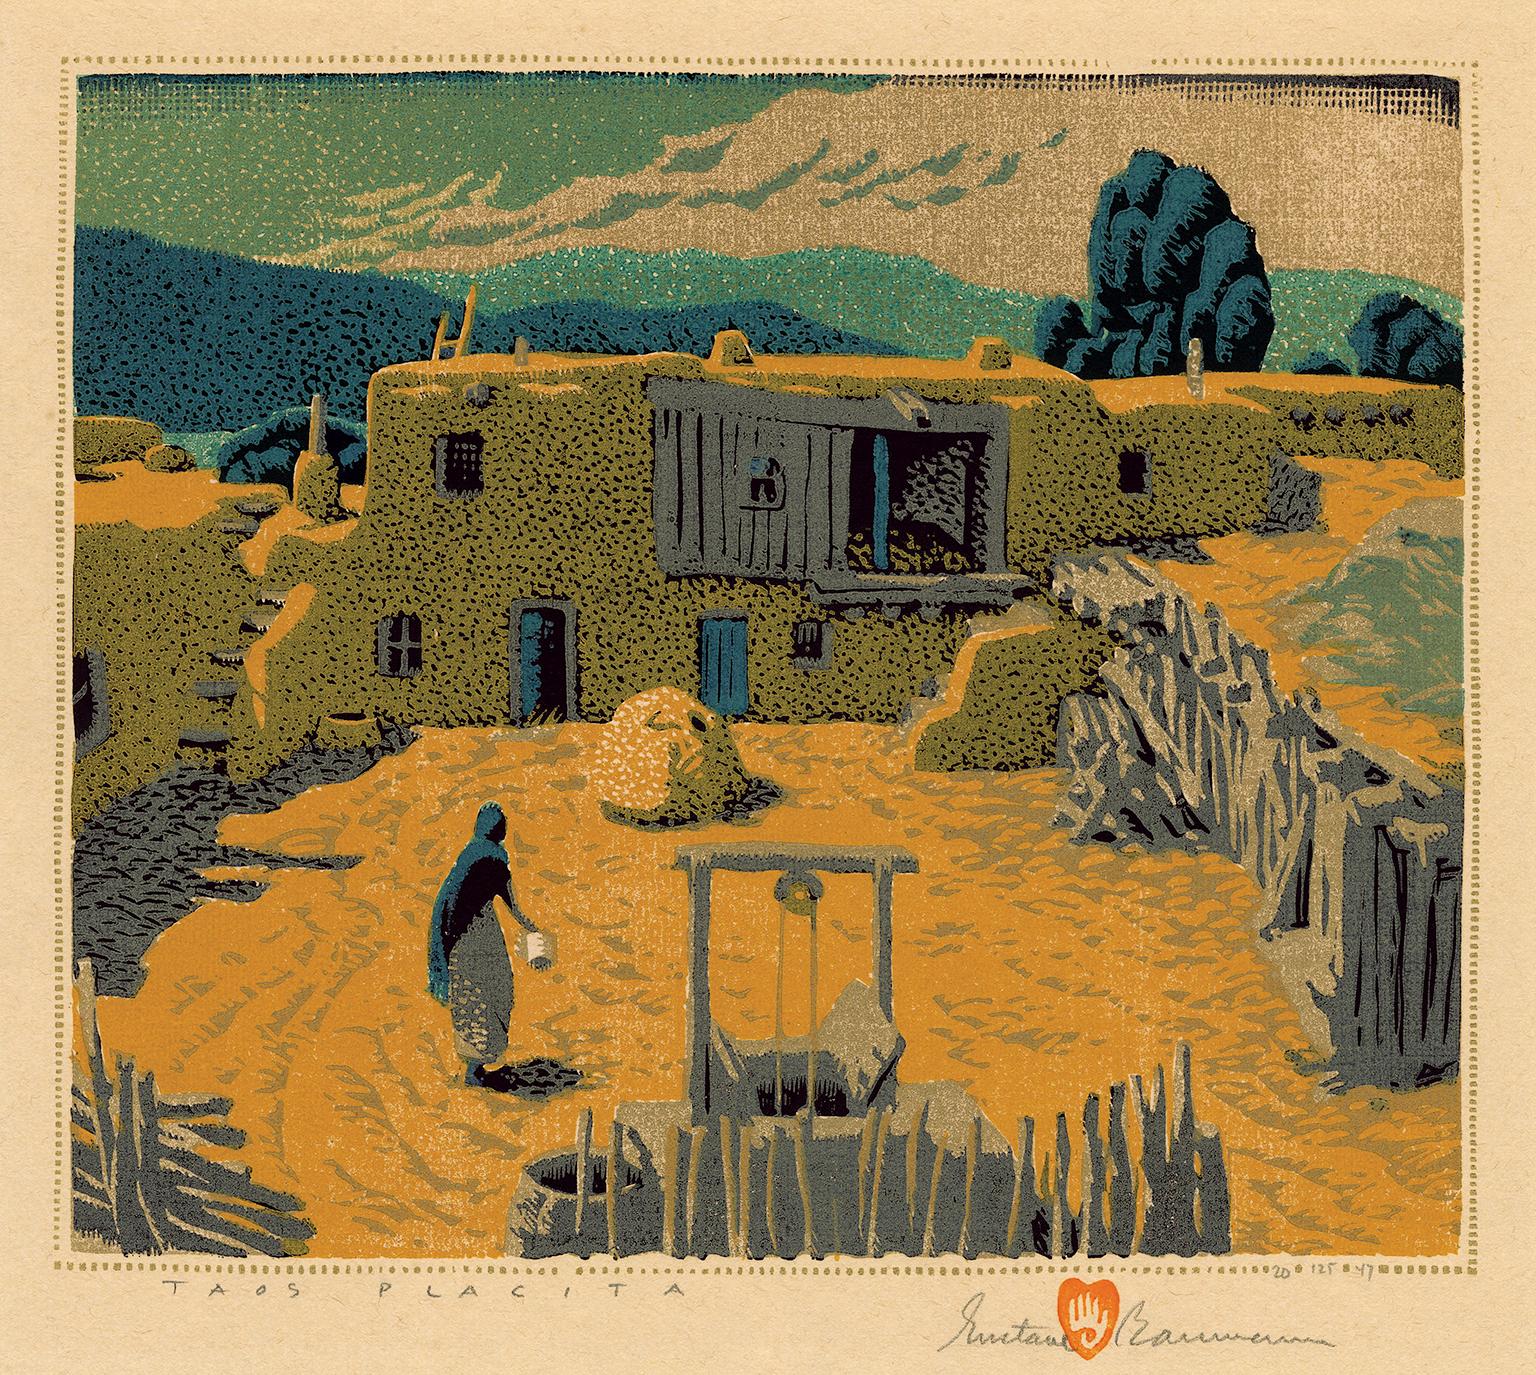 Gustave Baumann Landscape Print – Taos Placita" - Südwest-Regionalismus der 1940er Jahre